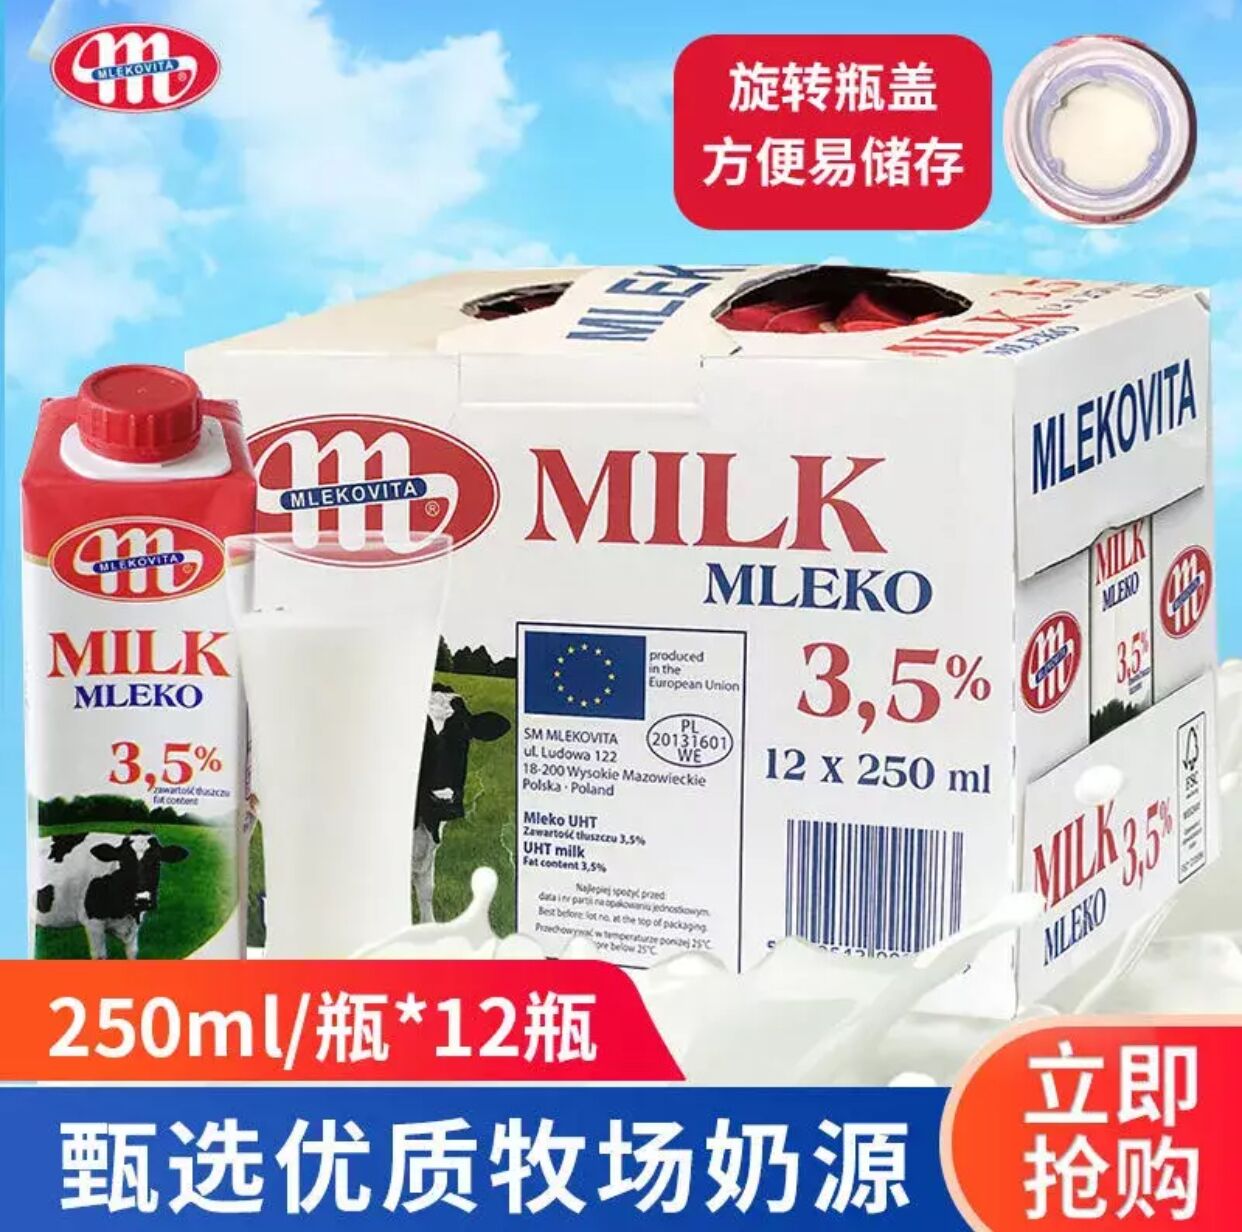 波兰原装进口牛奶妙可维Mlekovita全脂牛奶纯牛奶250ml*12盒妙亚